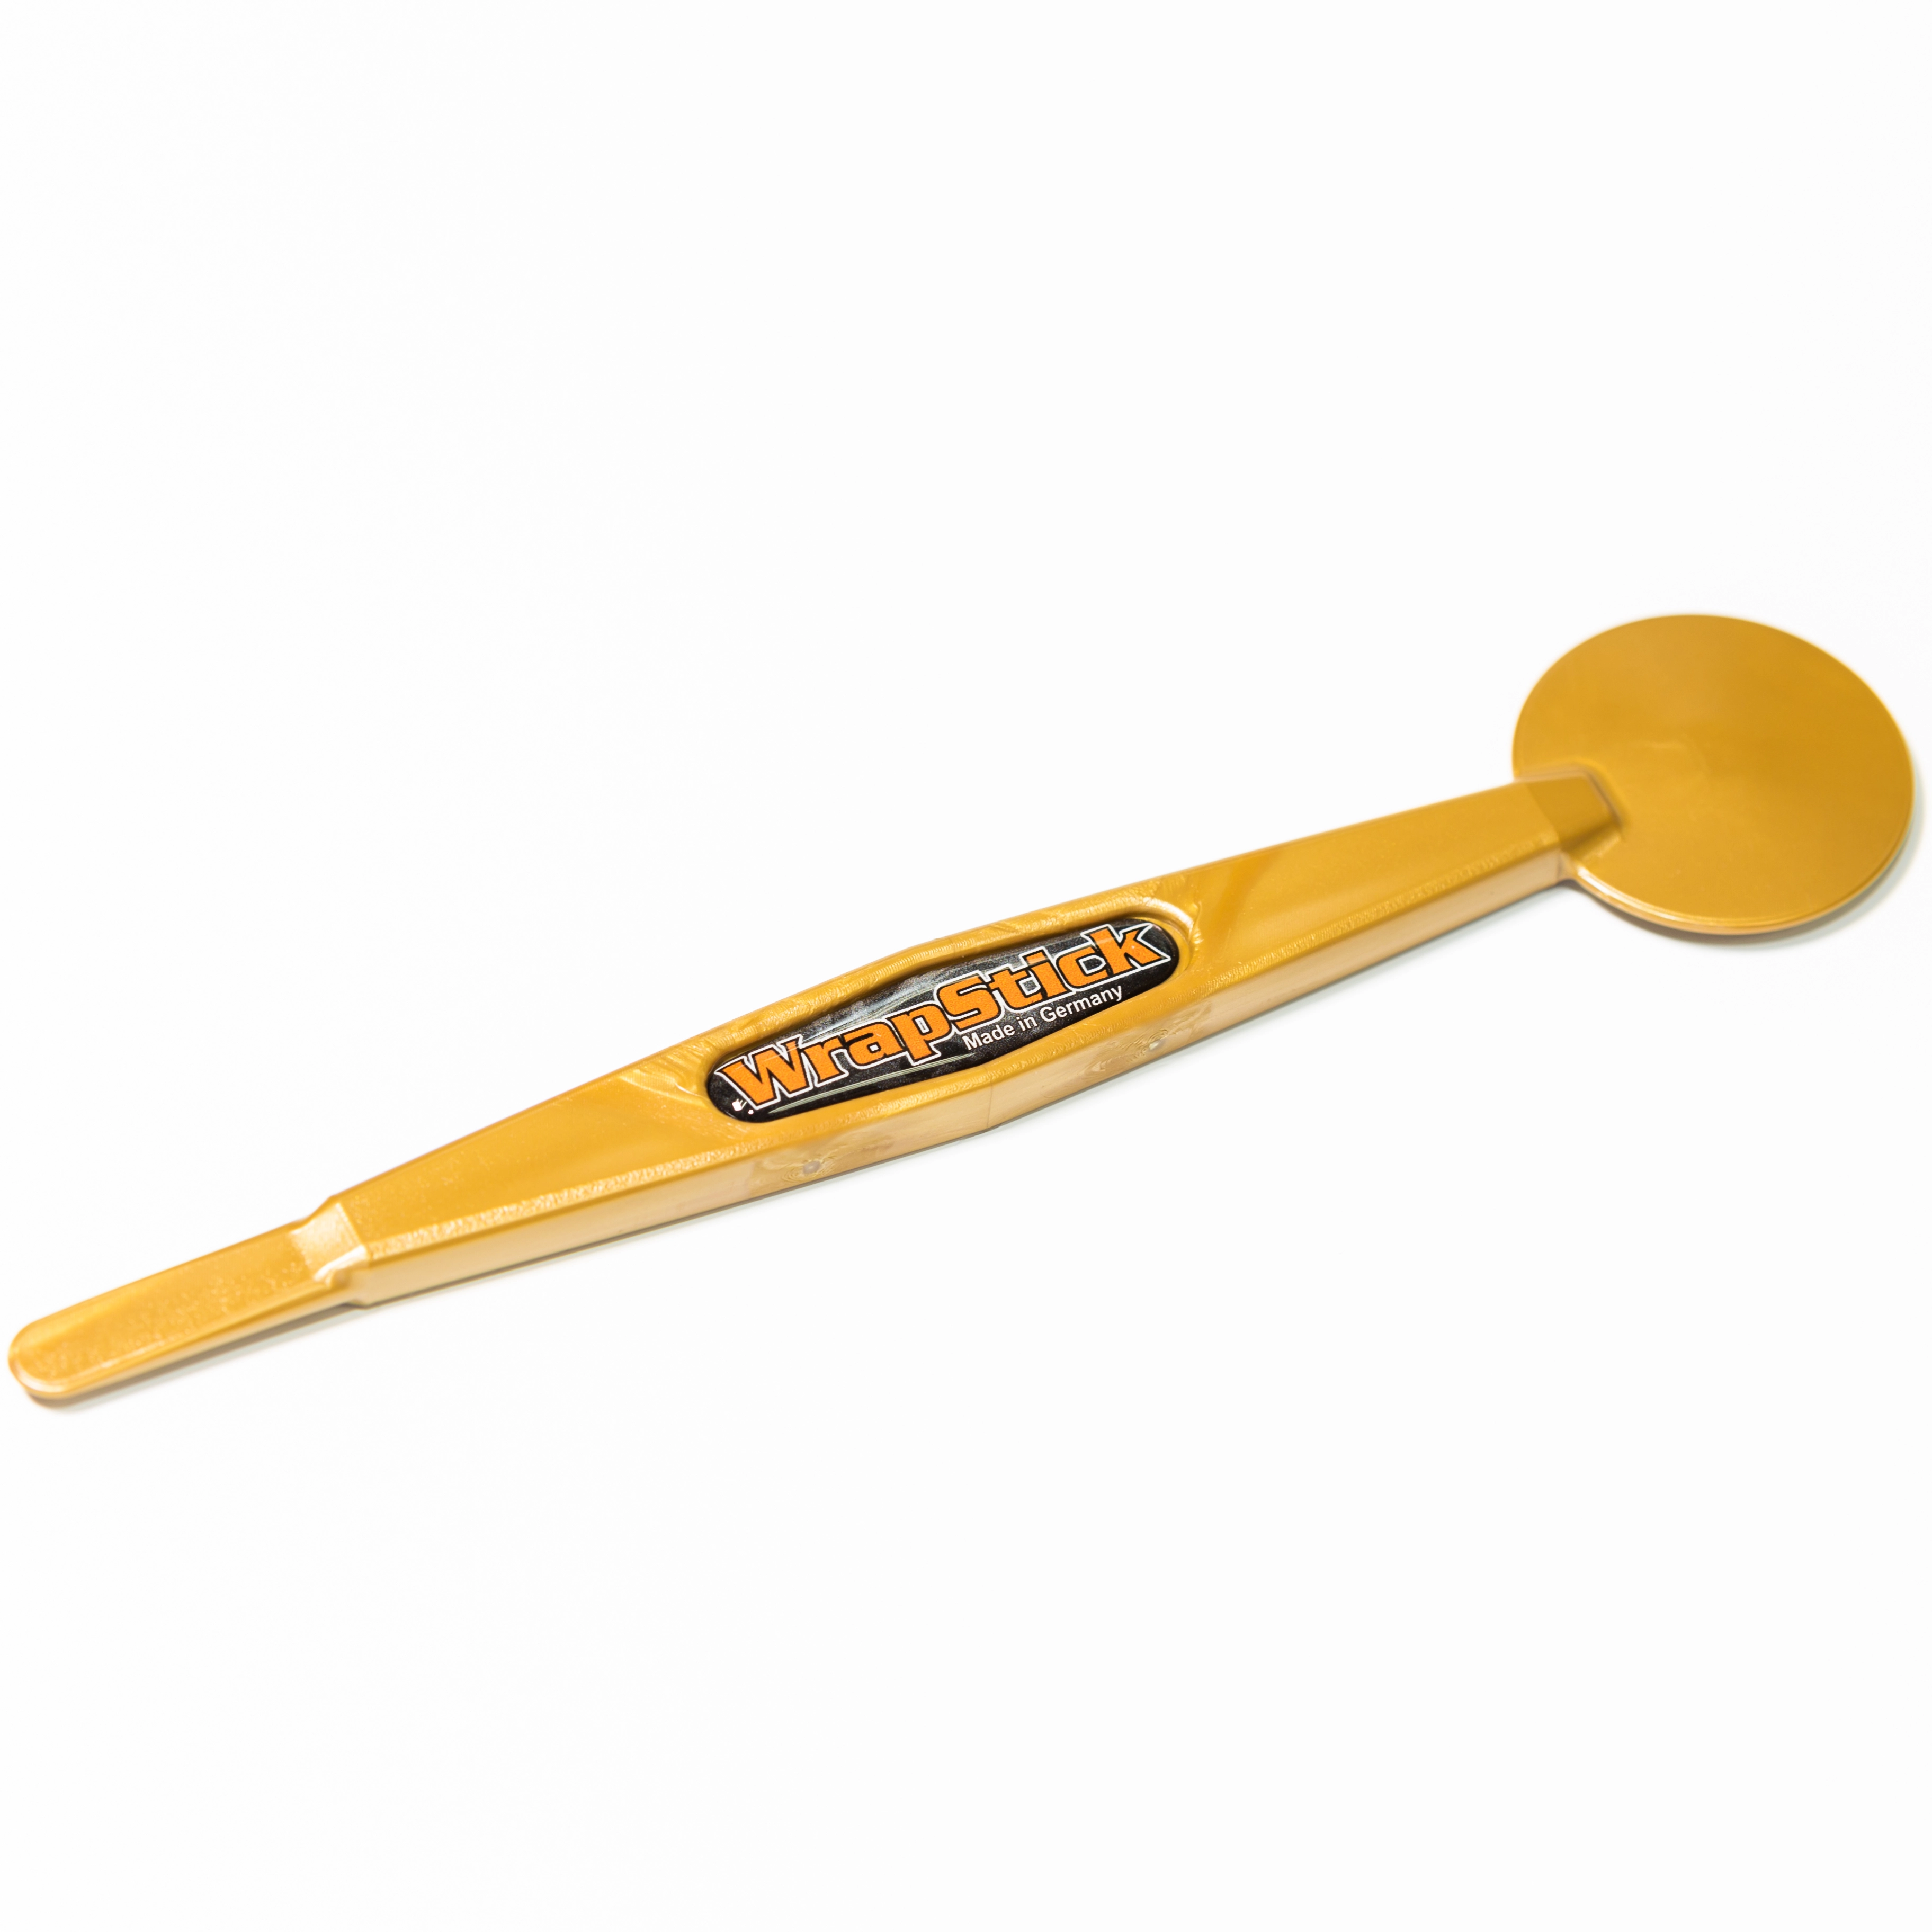 Установочный инструмент WrapStick Betty, жесткость 72, золотой